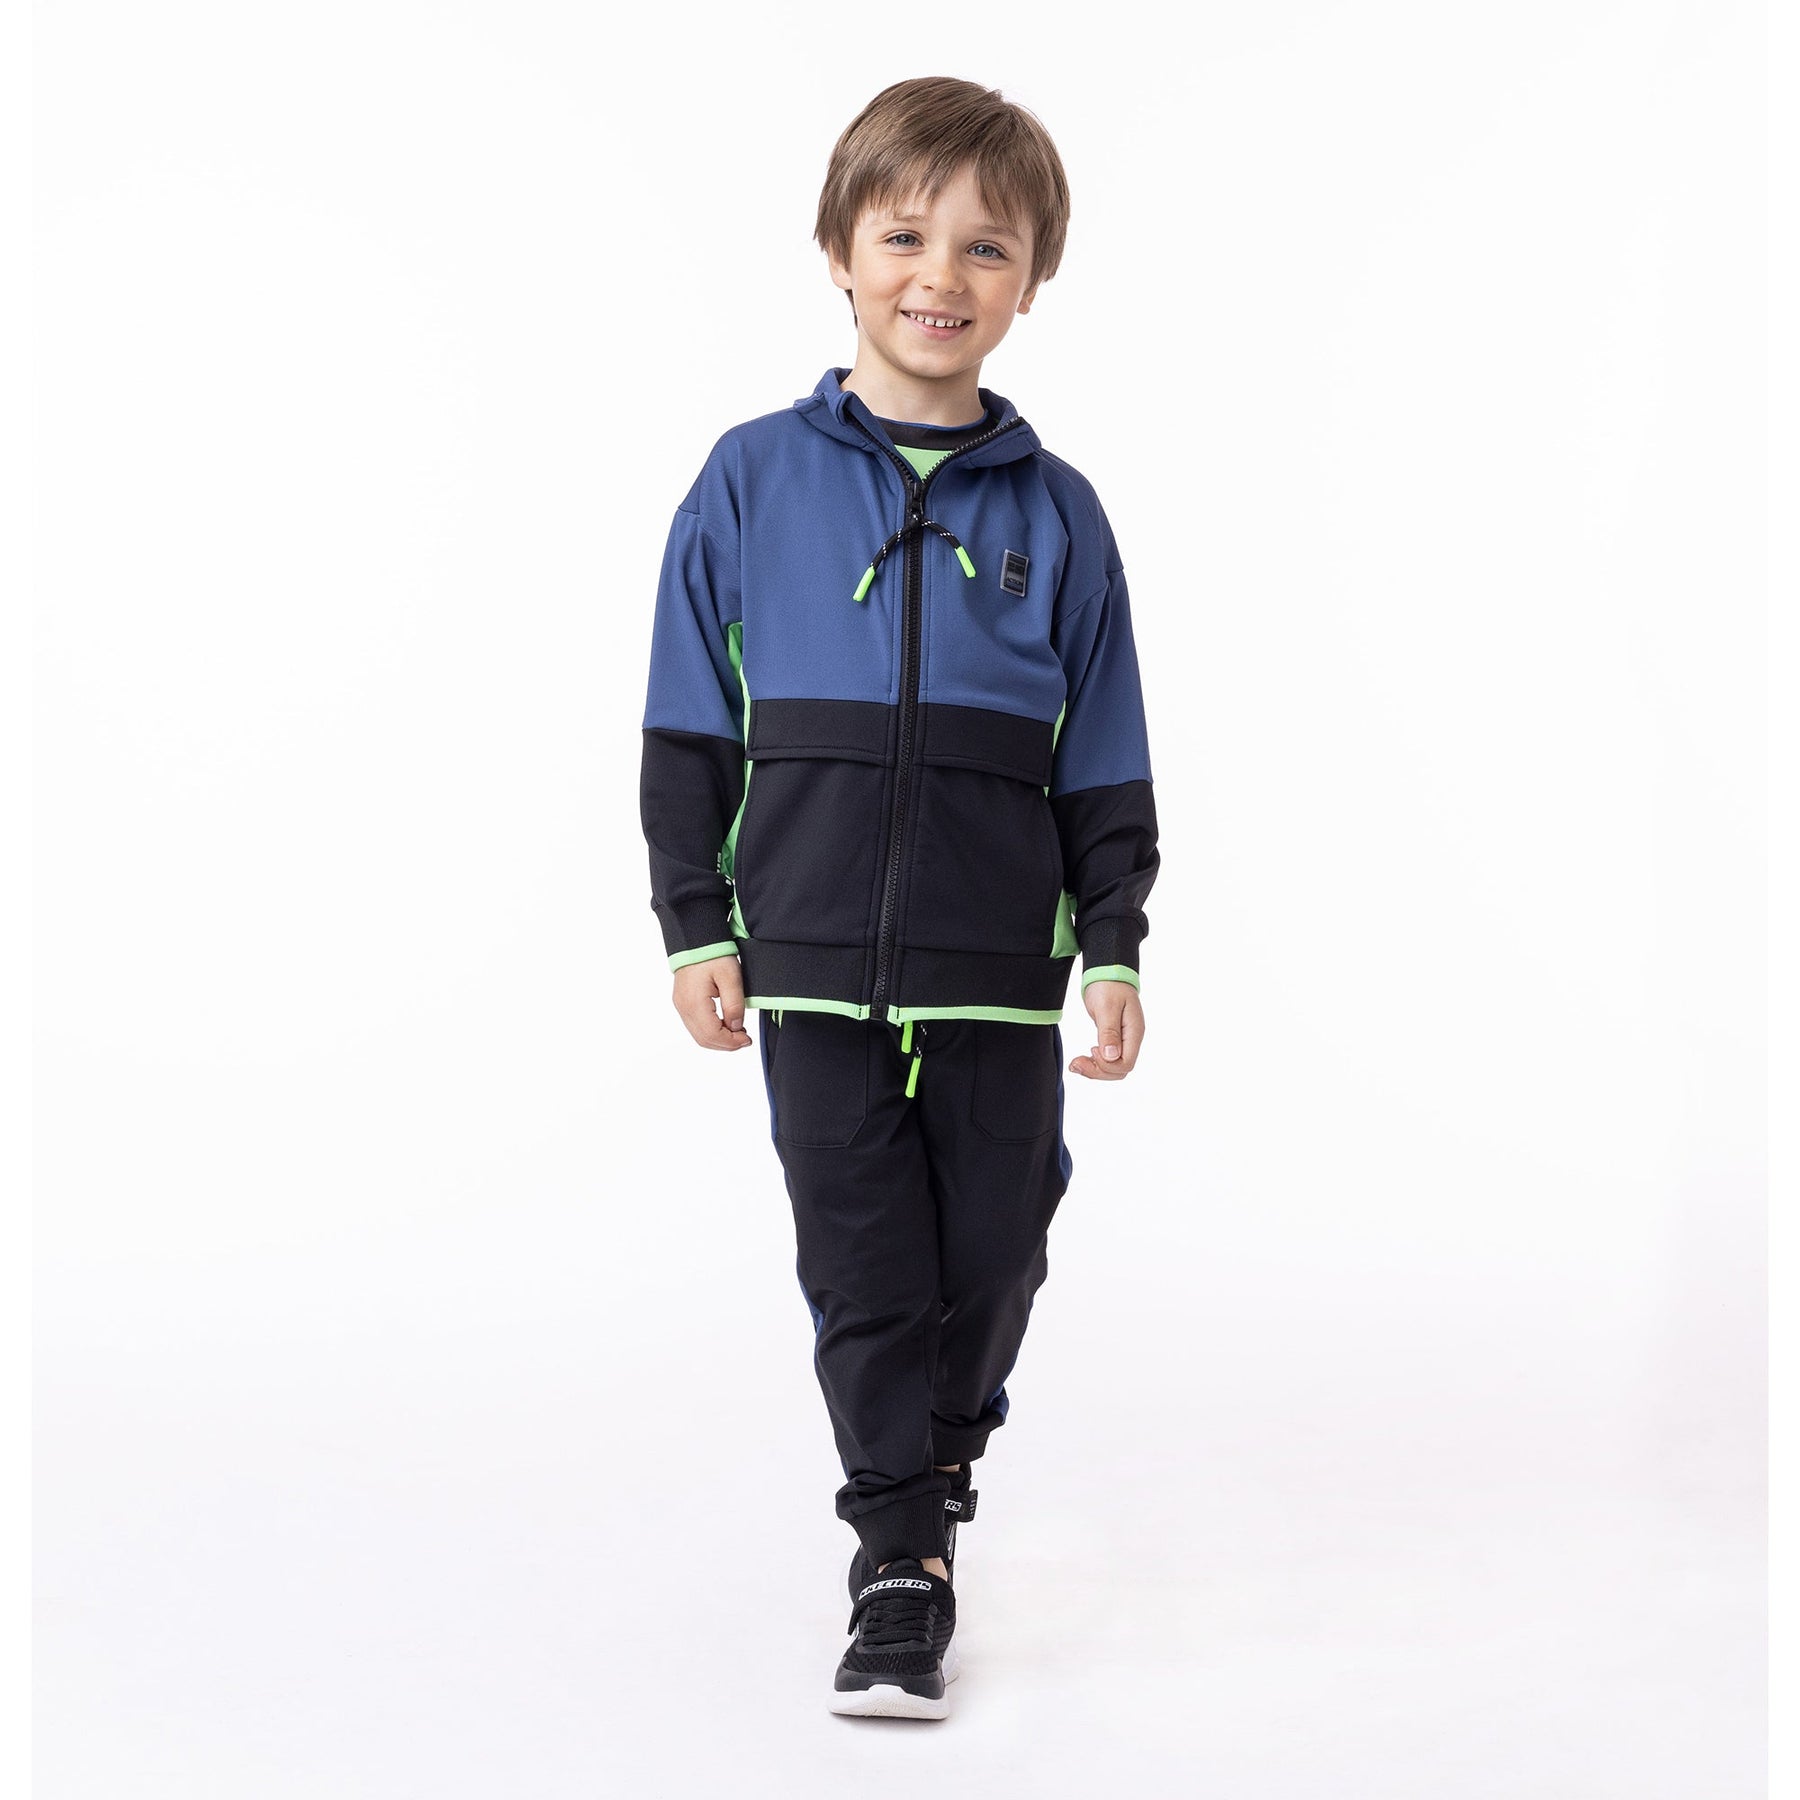 Veste athlétique pour enfant garçon par Nanö | F23A81-01 Marine | Boutique Flos, vêtements mode pour bébés et enfants